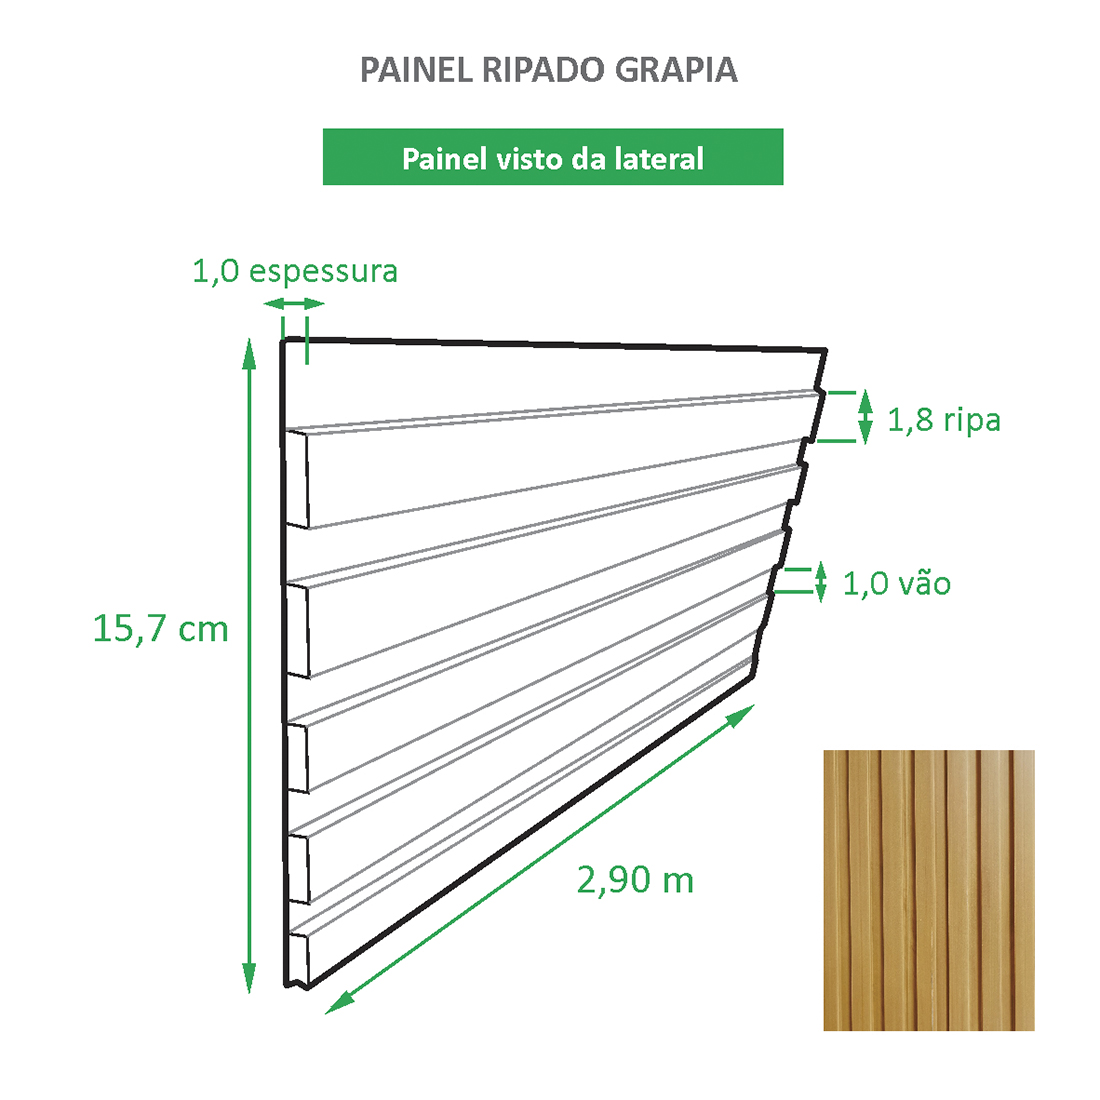 Painel Ripado Ecológico RENO Grapia - Novidade placa com 0,46m²